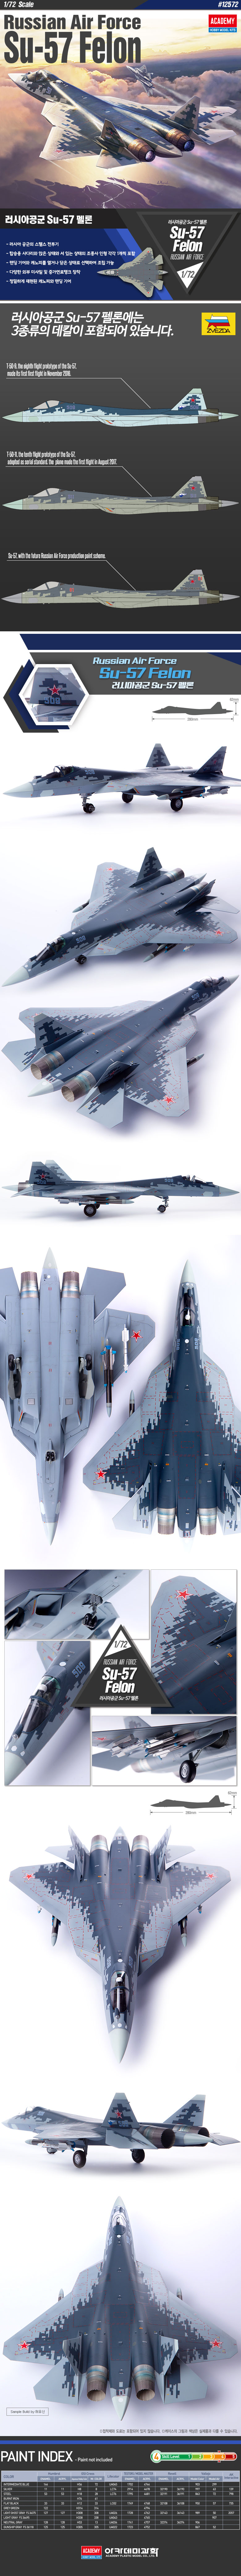 1/72 ロシア空軍 Su-57 フェロン - ウインドウを閉じる